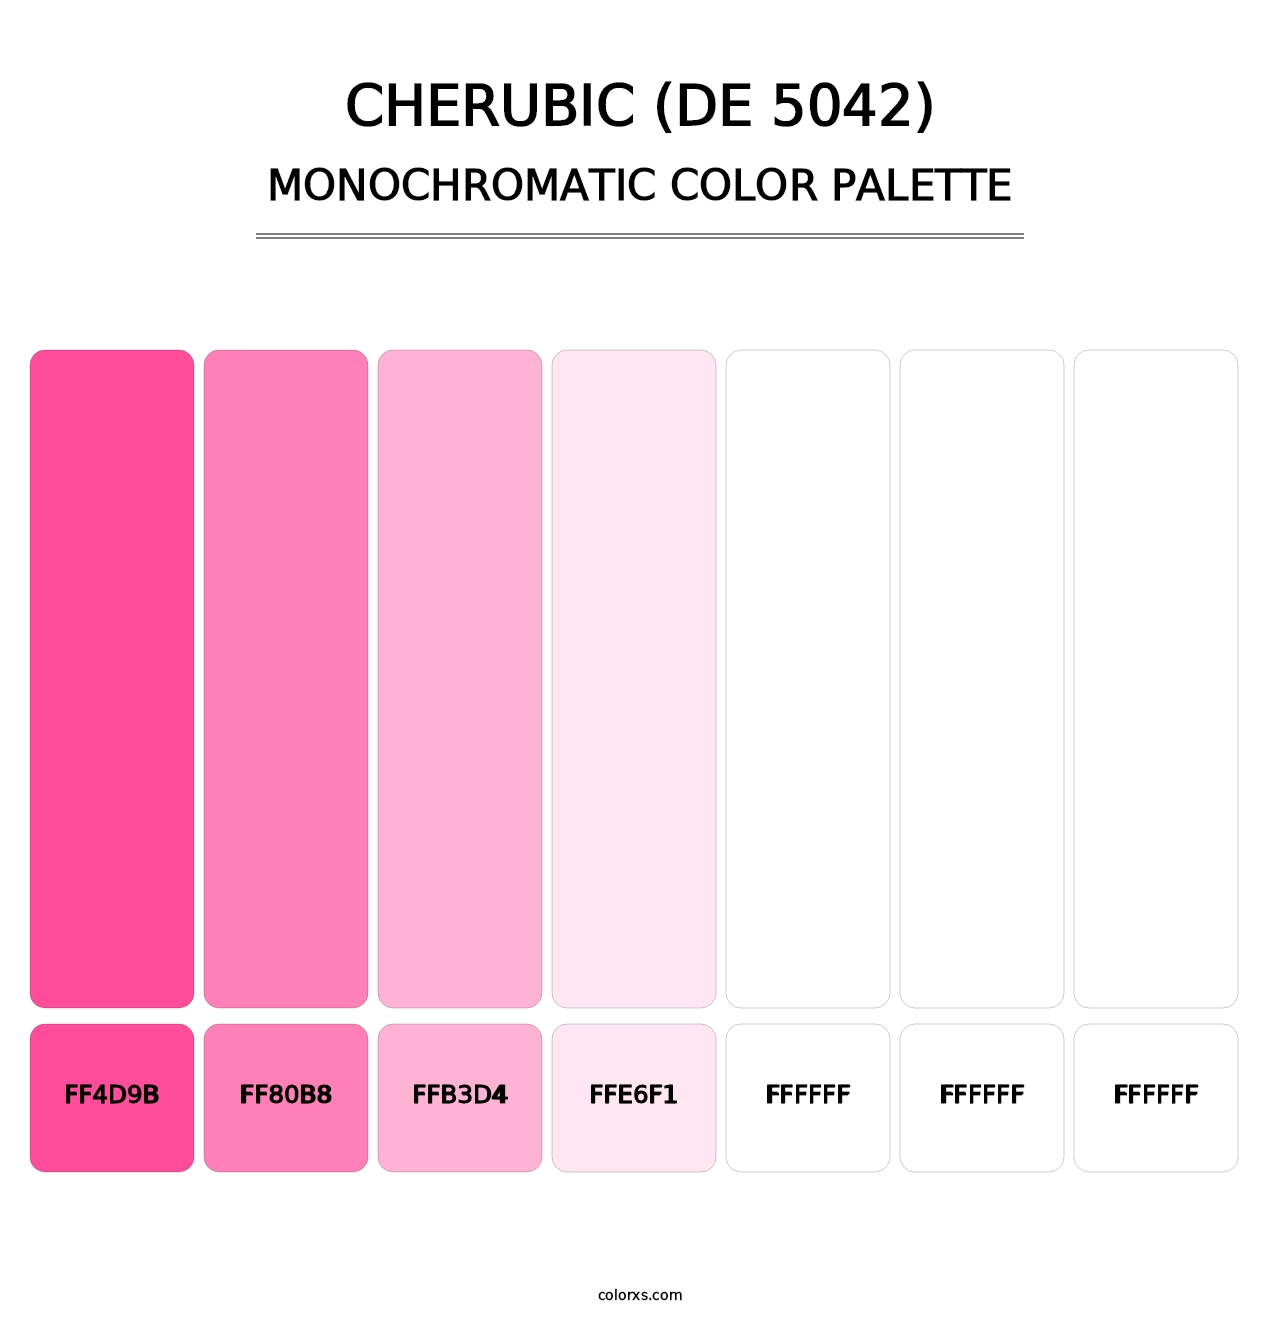 Cherubic (DE 5042) - Monochromatic Color Palette